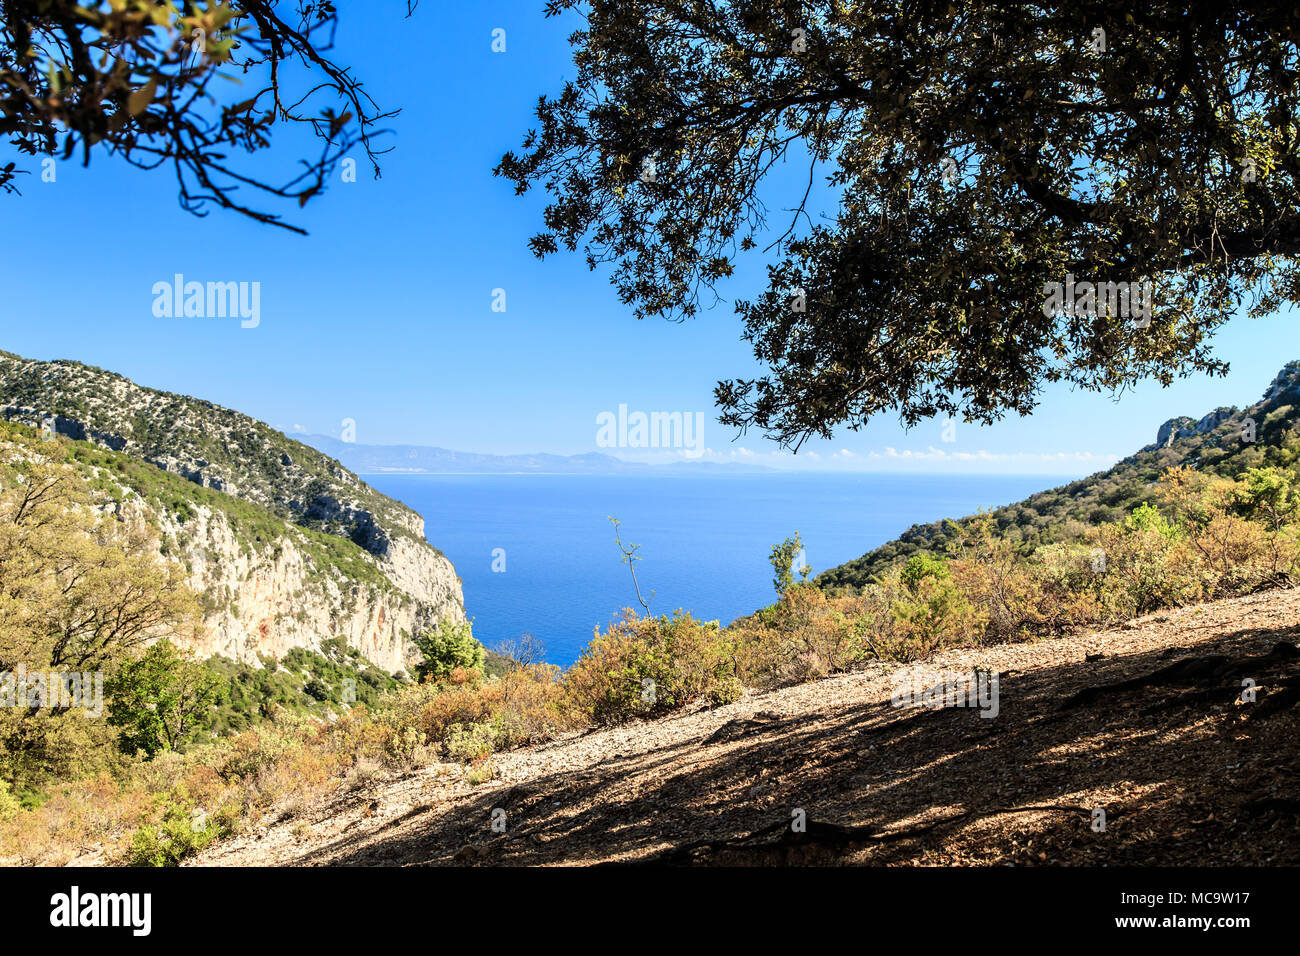 The beautiful bay in the Gulf of Orosei, Sardinia Stock Photo